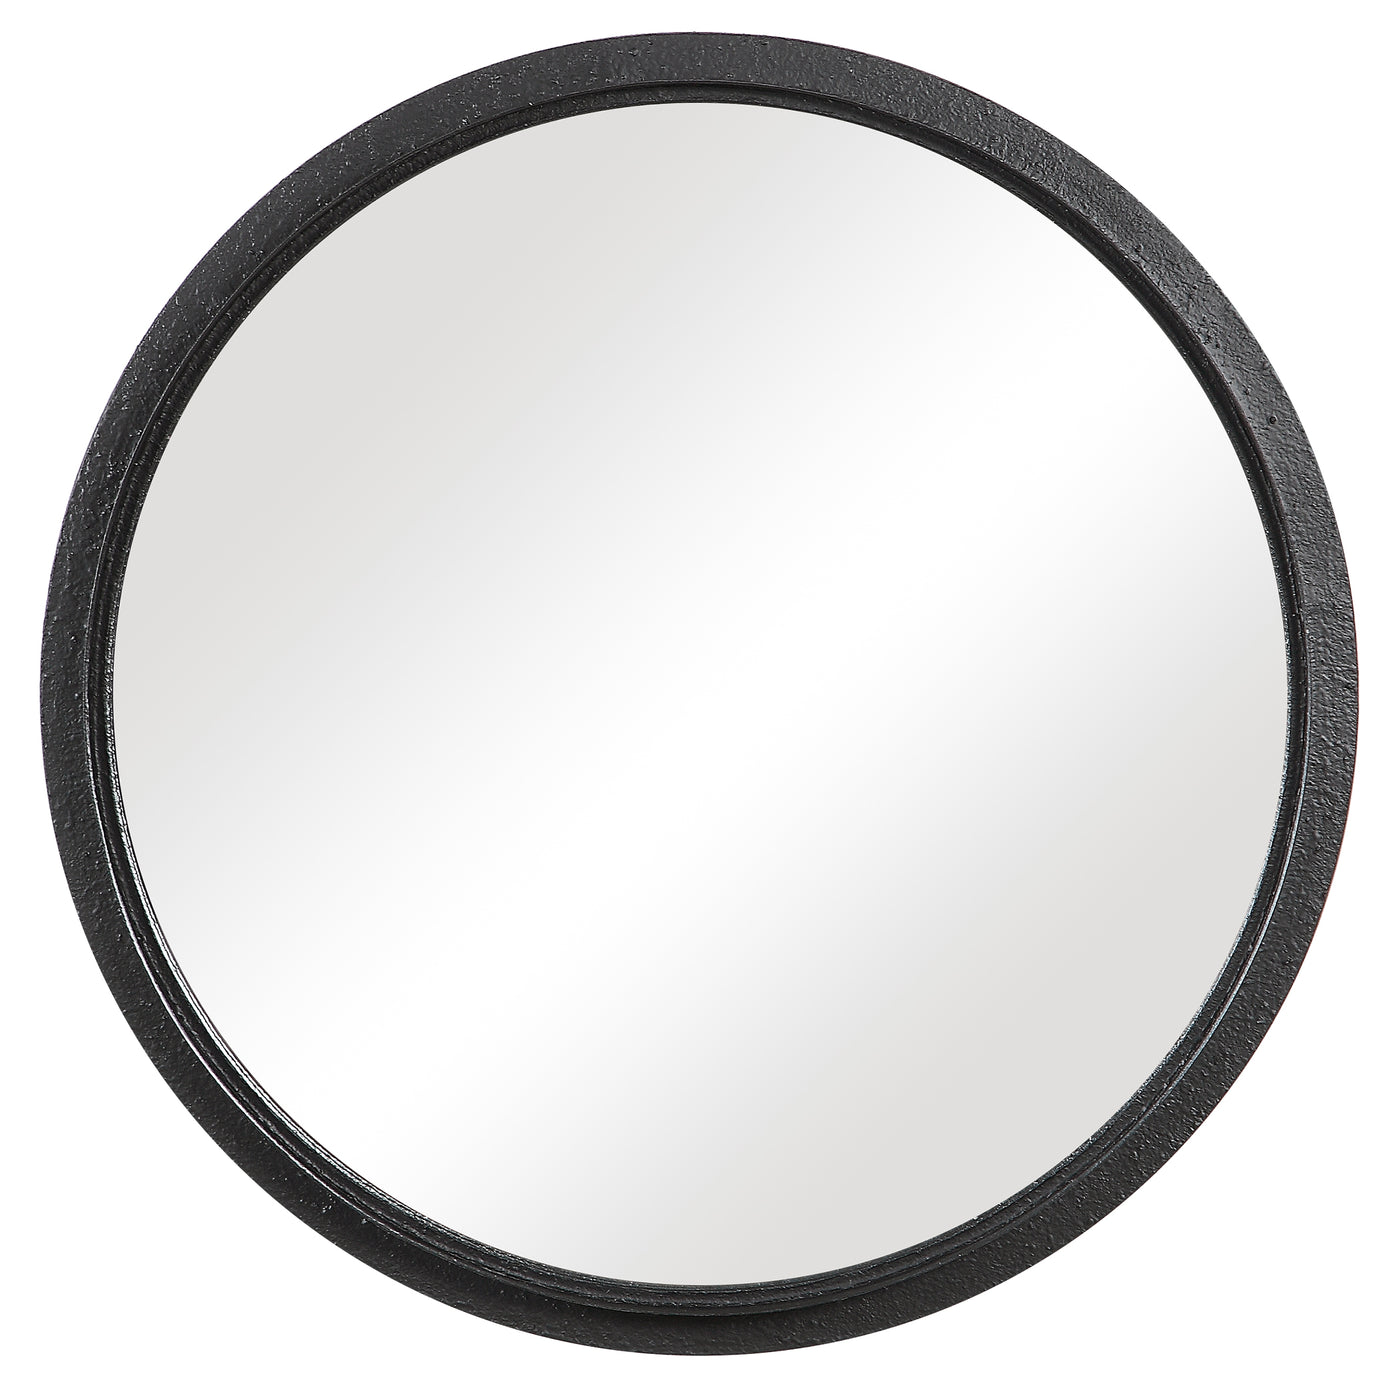 The Champlain Mirror